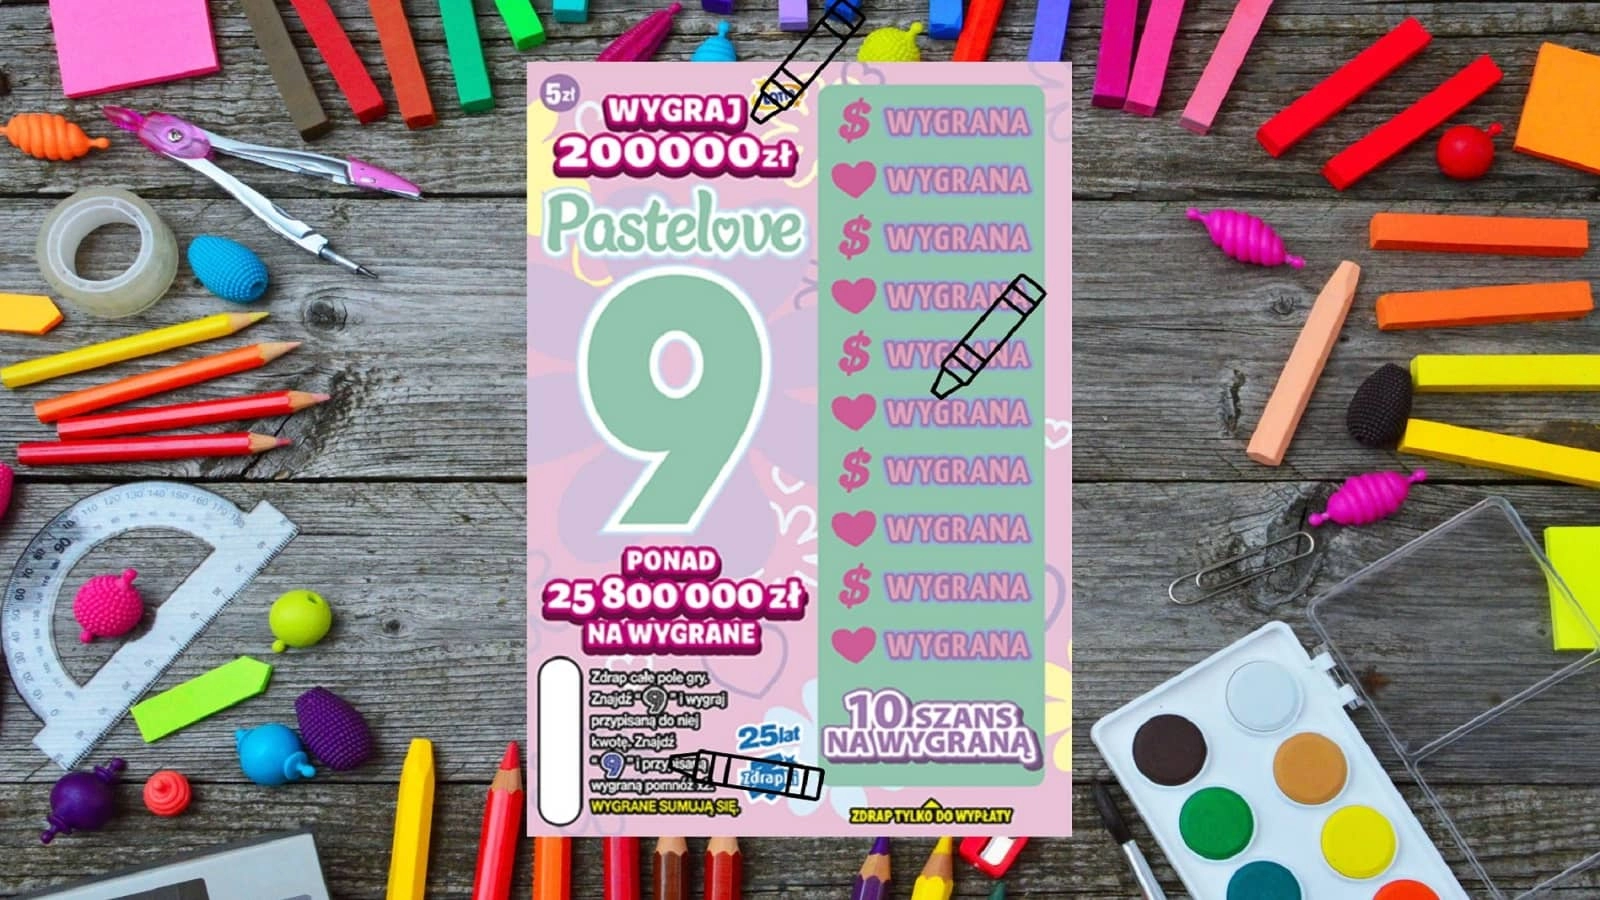 zdrapka Lotto Pastelove 9 leżąca na przyborach do malowania, kredkach, flamastrach